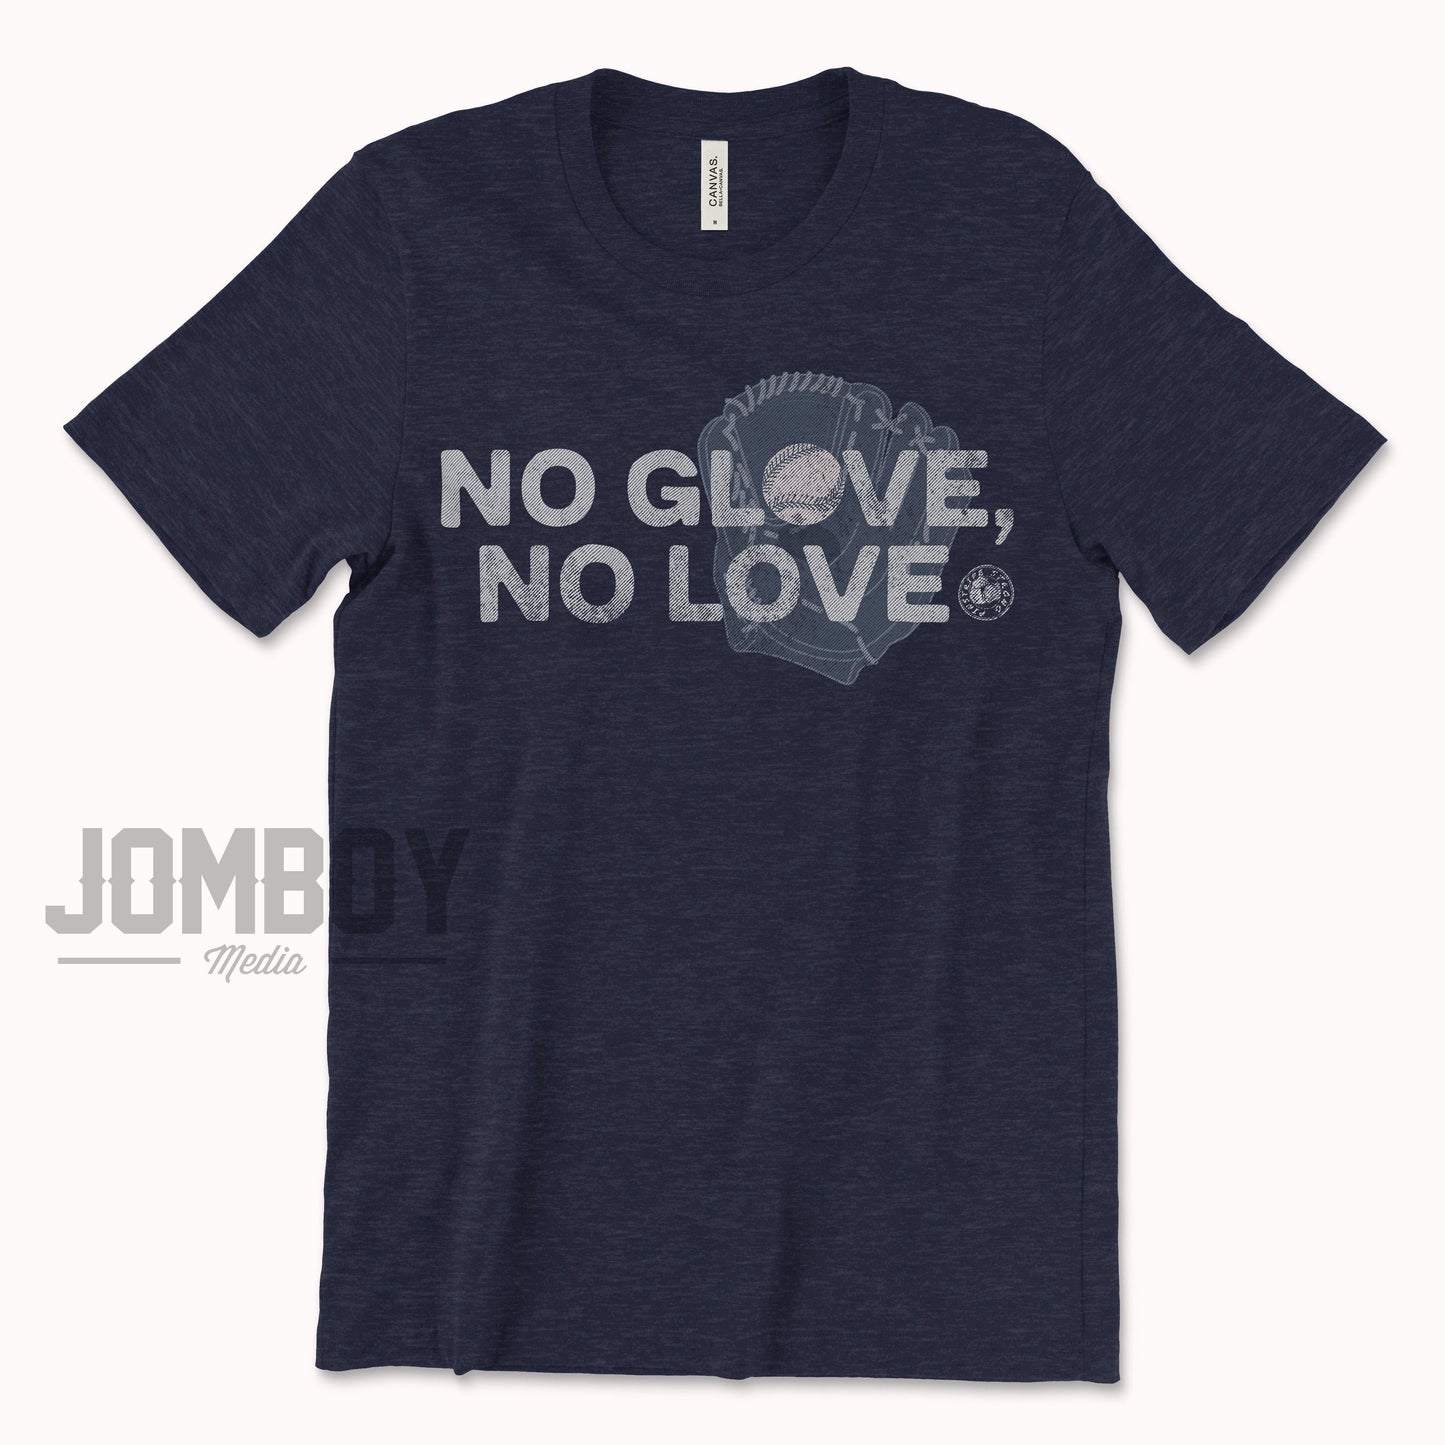 No Glove, No Love | T-Shirt - Jomboy Media